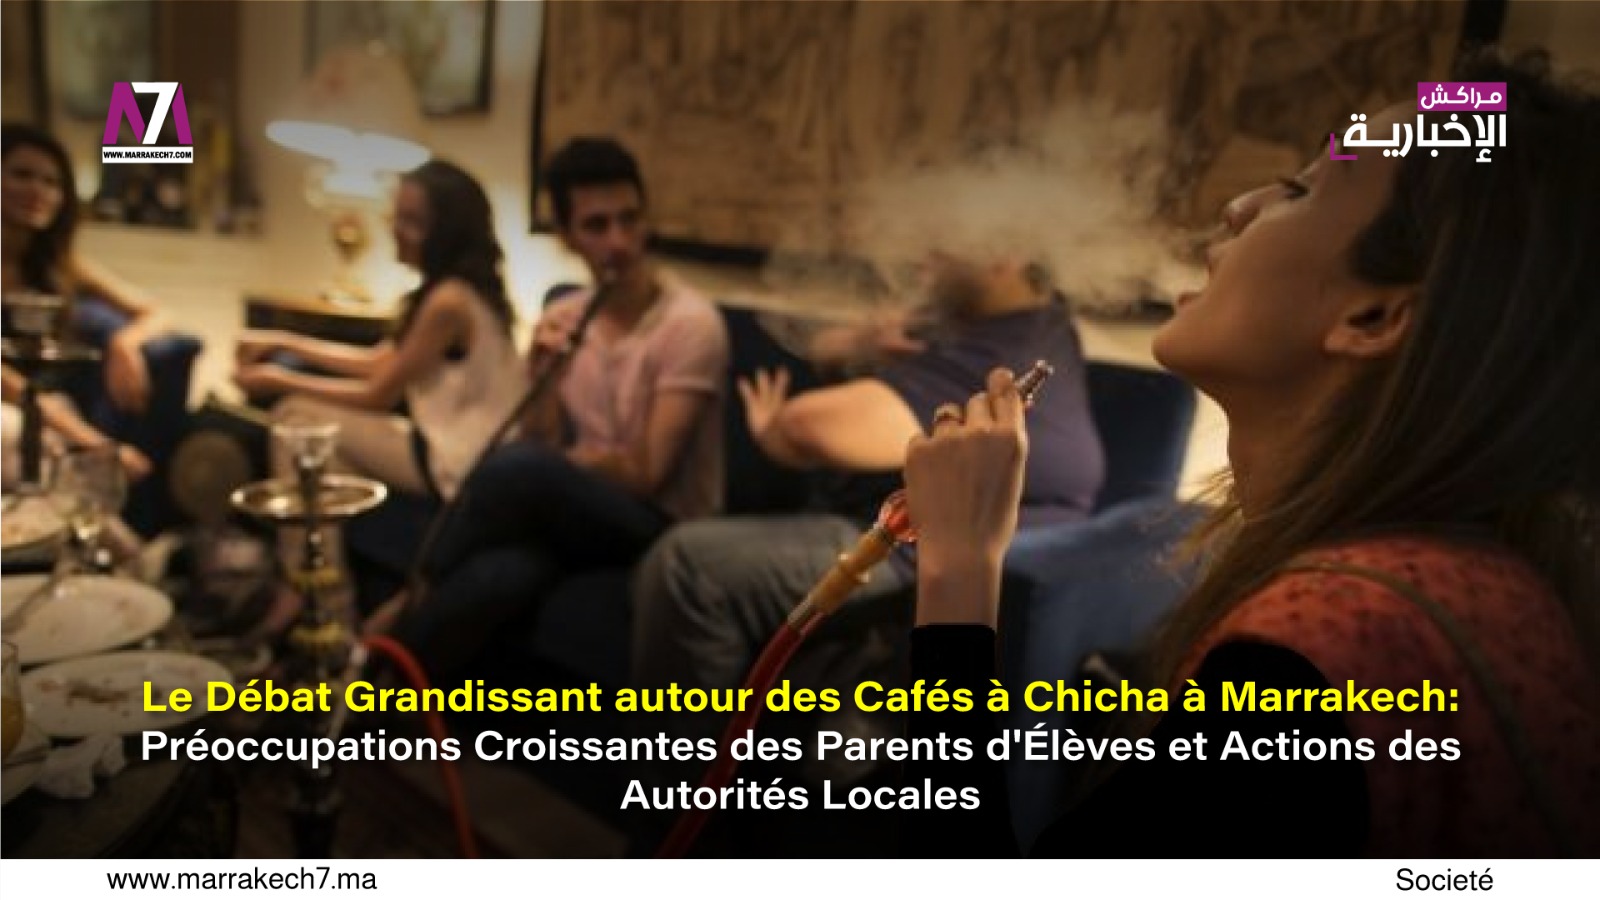 Le Débat Grandissant autour des Cafés à Chicha à Marrakech : Préoccupations Croissantes des Parents d’Élèves et Actions des Autorités Locales